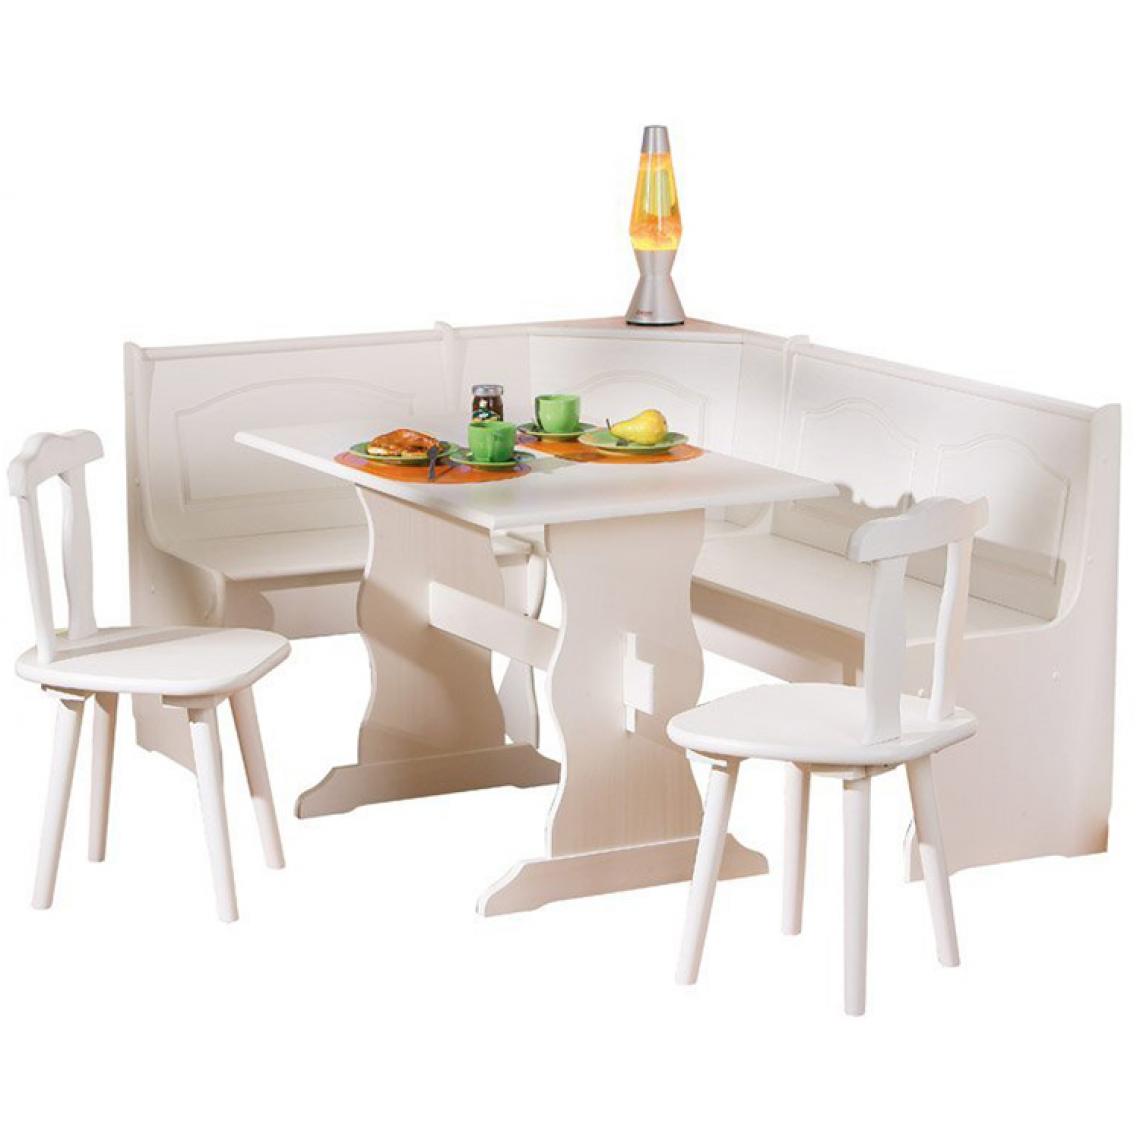 Pegane - Coin Repas en bois massif Blanc, Dim : 50 x 172 x 87 cm - Tables à manger